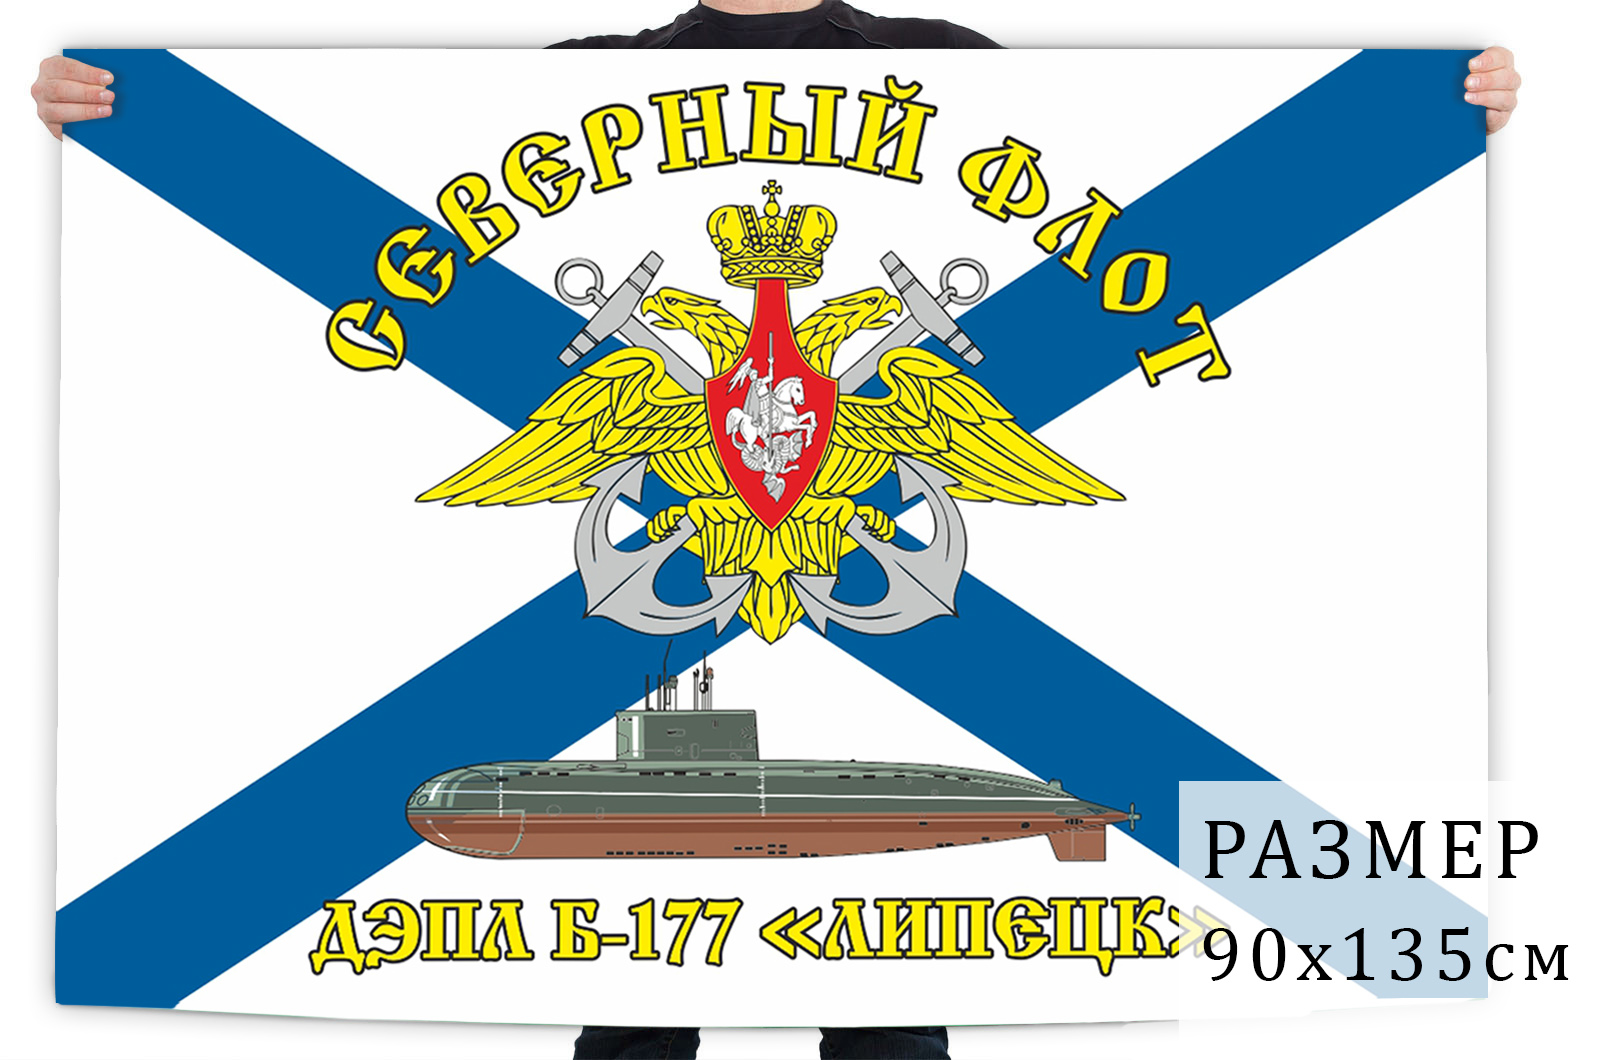 Купить флаг ВМФ ДЭПЛ Б-177 «Липецк» Северный флот